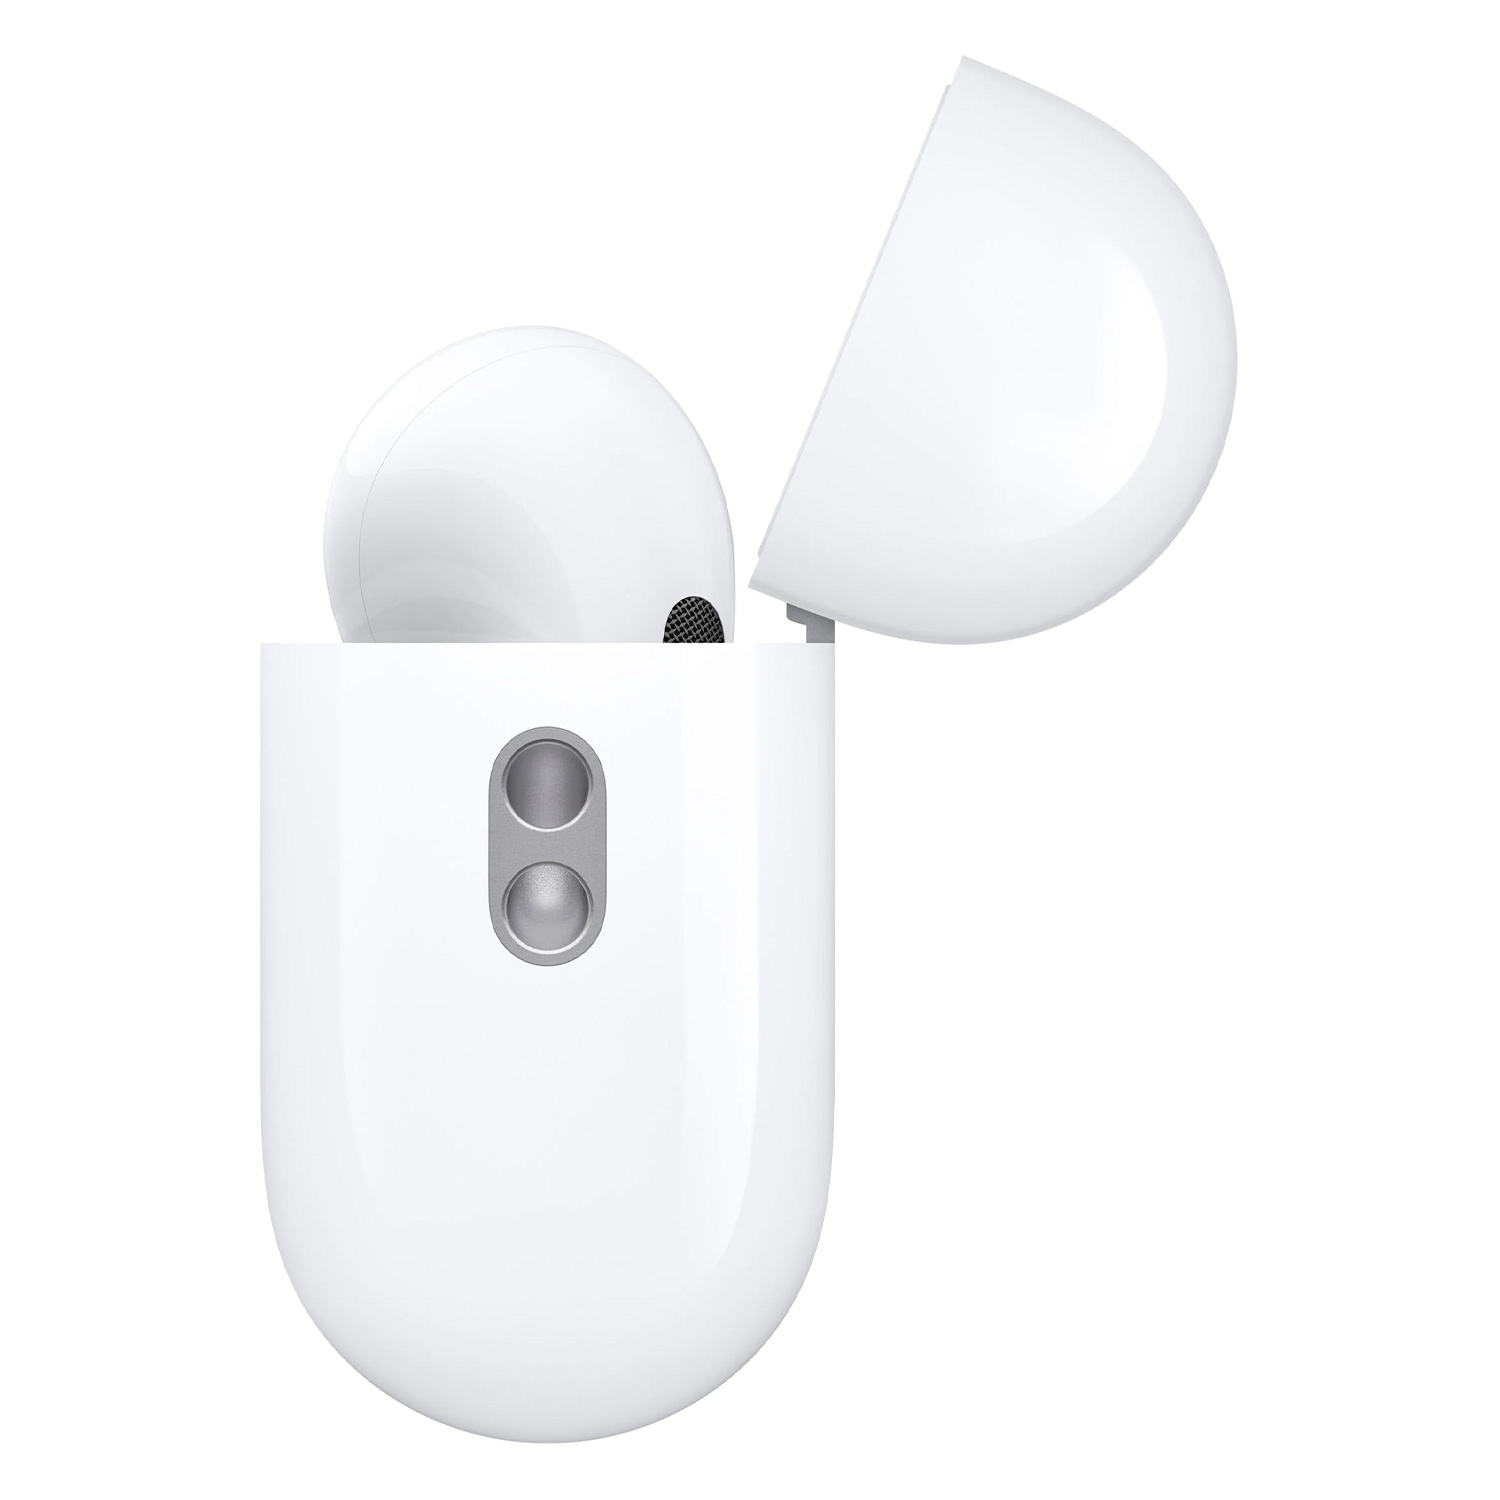 Fone de Ouvido Apple Airpods Pro MQD83AM/A com Magsafe Case - Branco (2ª Geração)(Deslacrado)